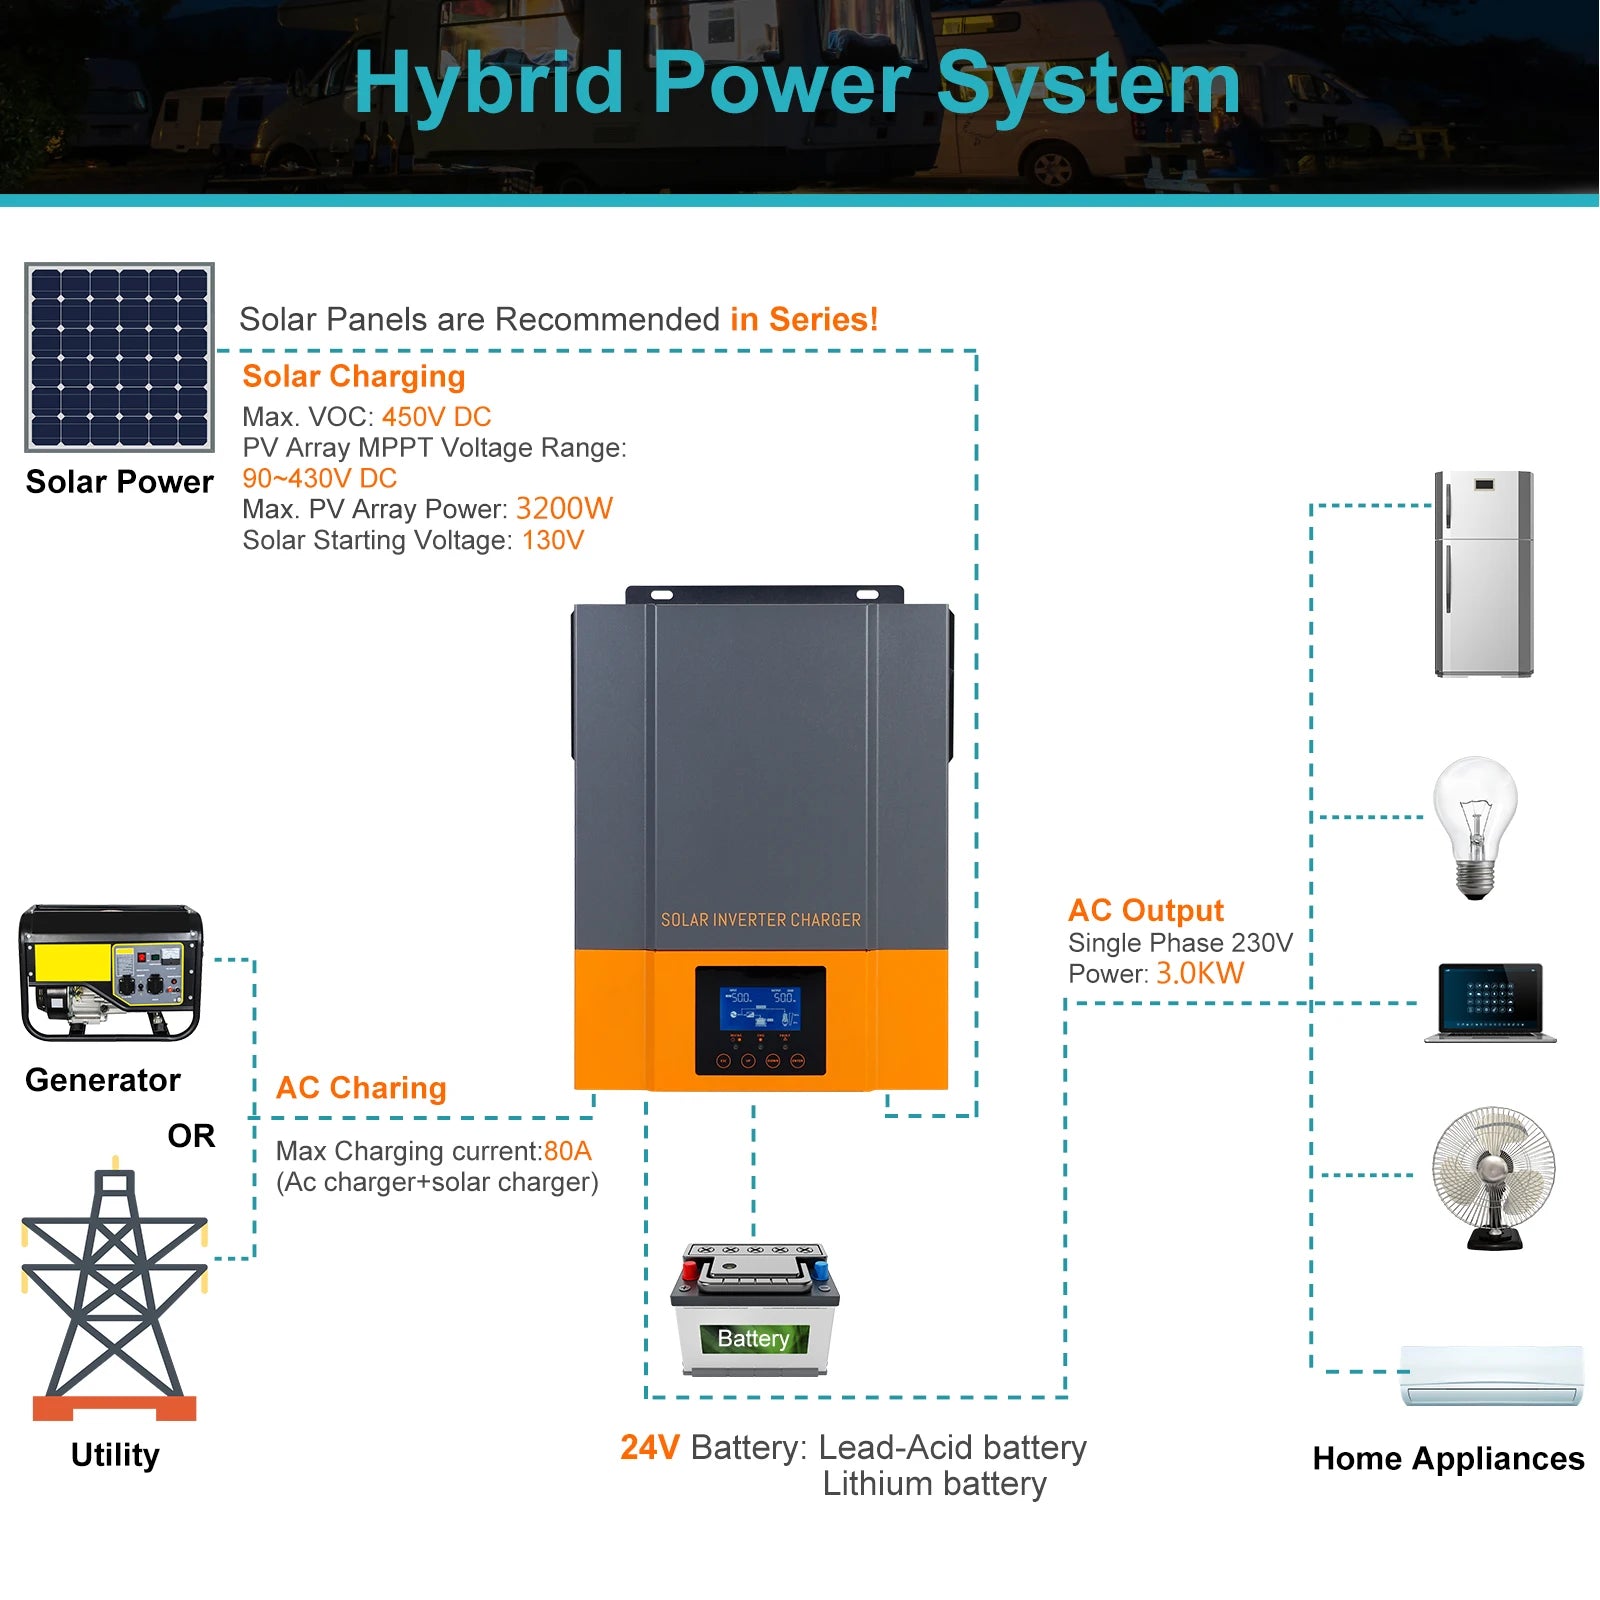 PowMr 1.5KW 2.4KW 3.2KW Hybrid Solar Inverter, PowMr hybrid solar inverter for series-connected PV arrays, up to 3200W, 90-430V DC range.